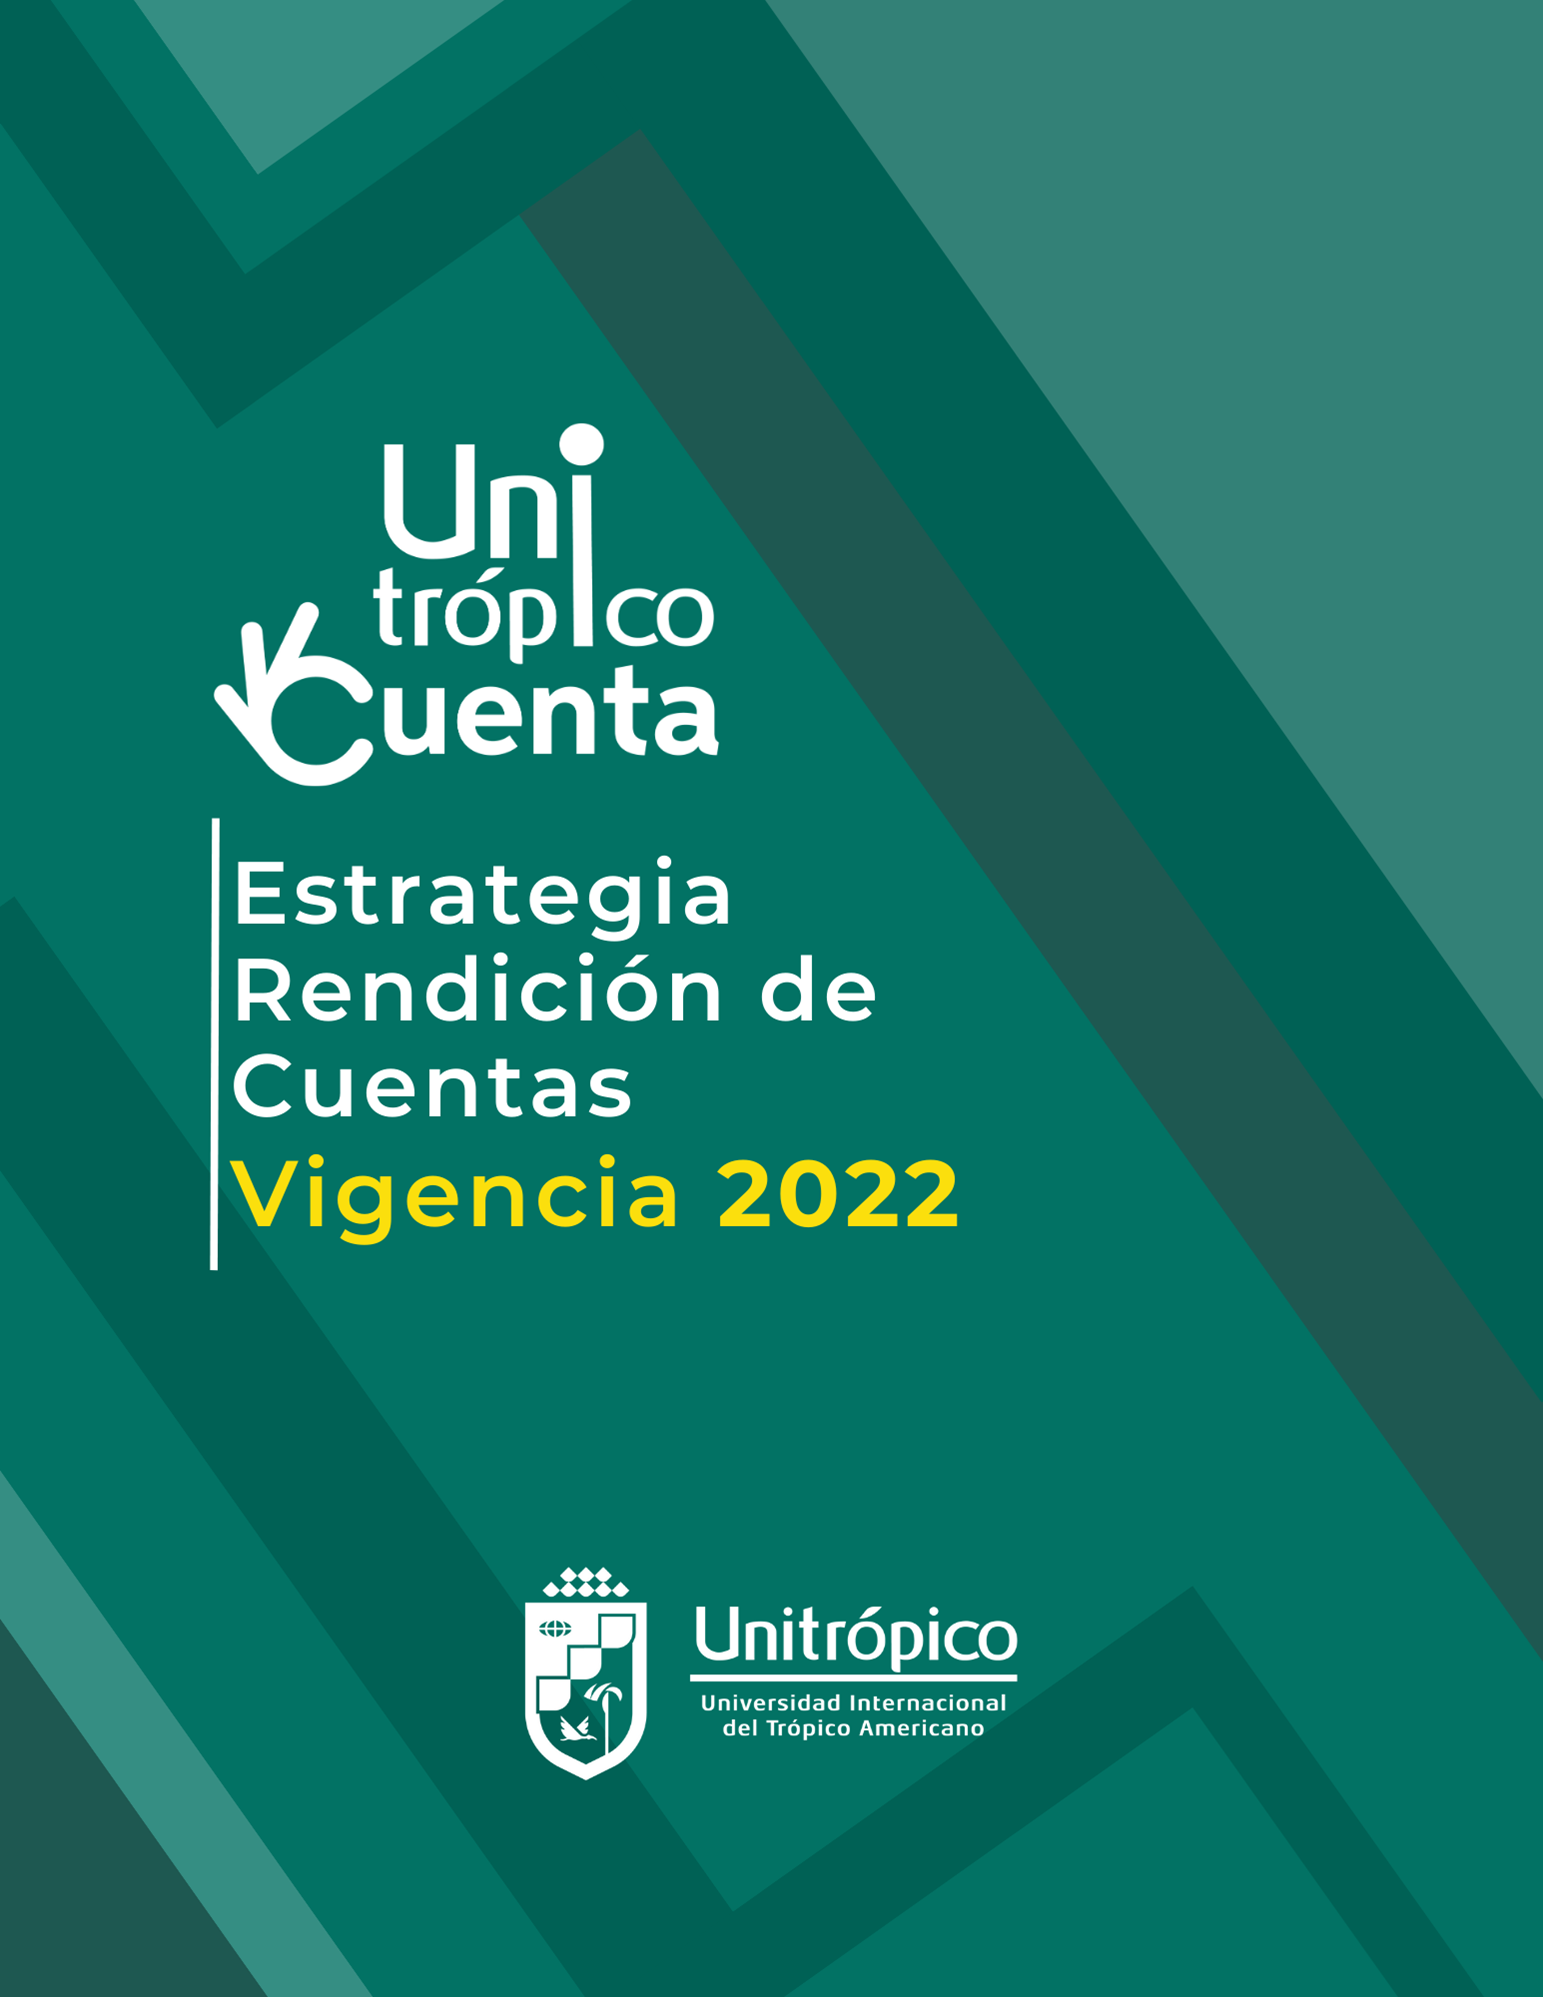 01._Estrategia_de_Rendicion_de_Cuentas_Vigencia_2022.png